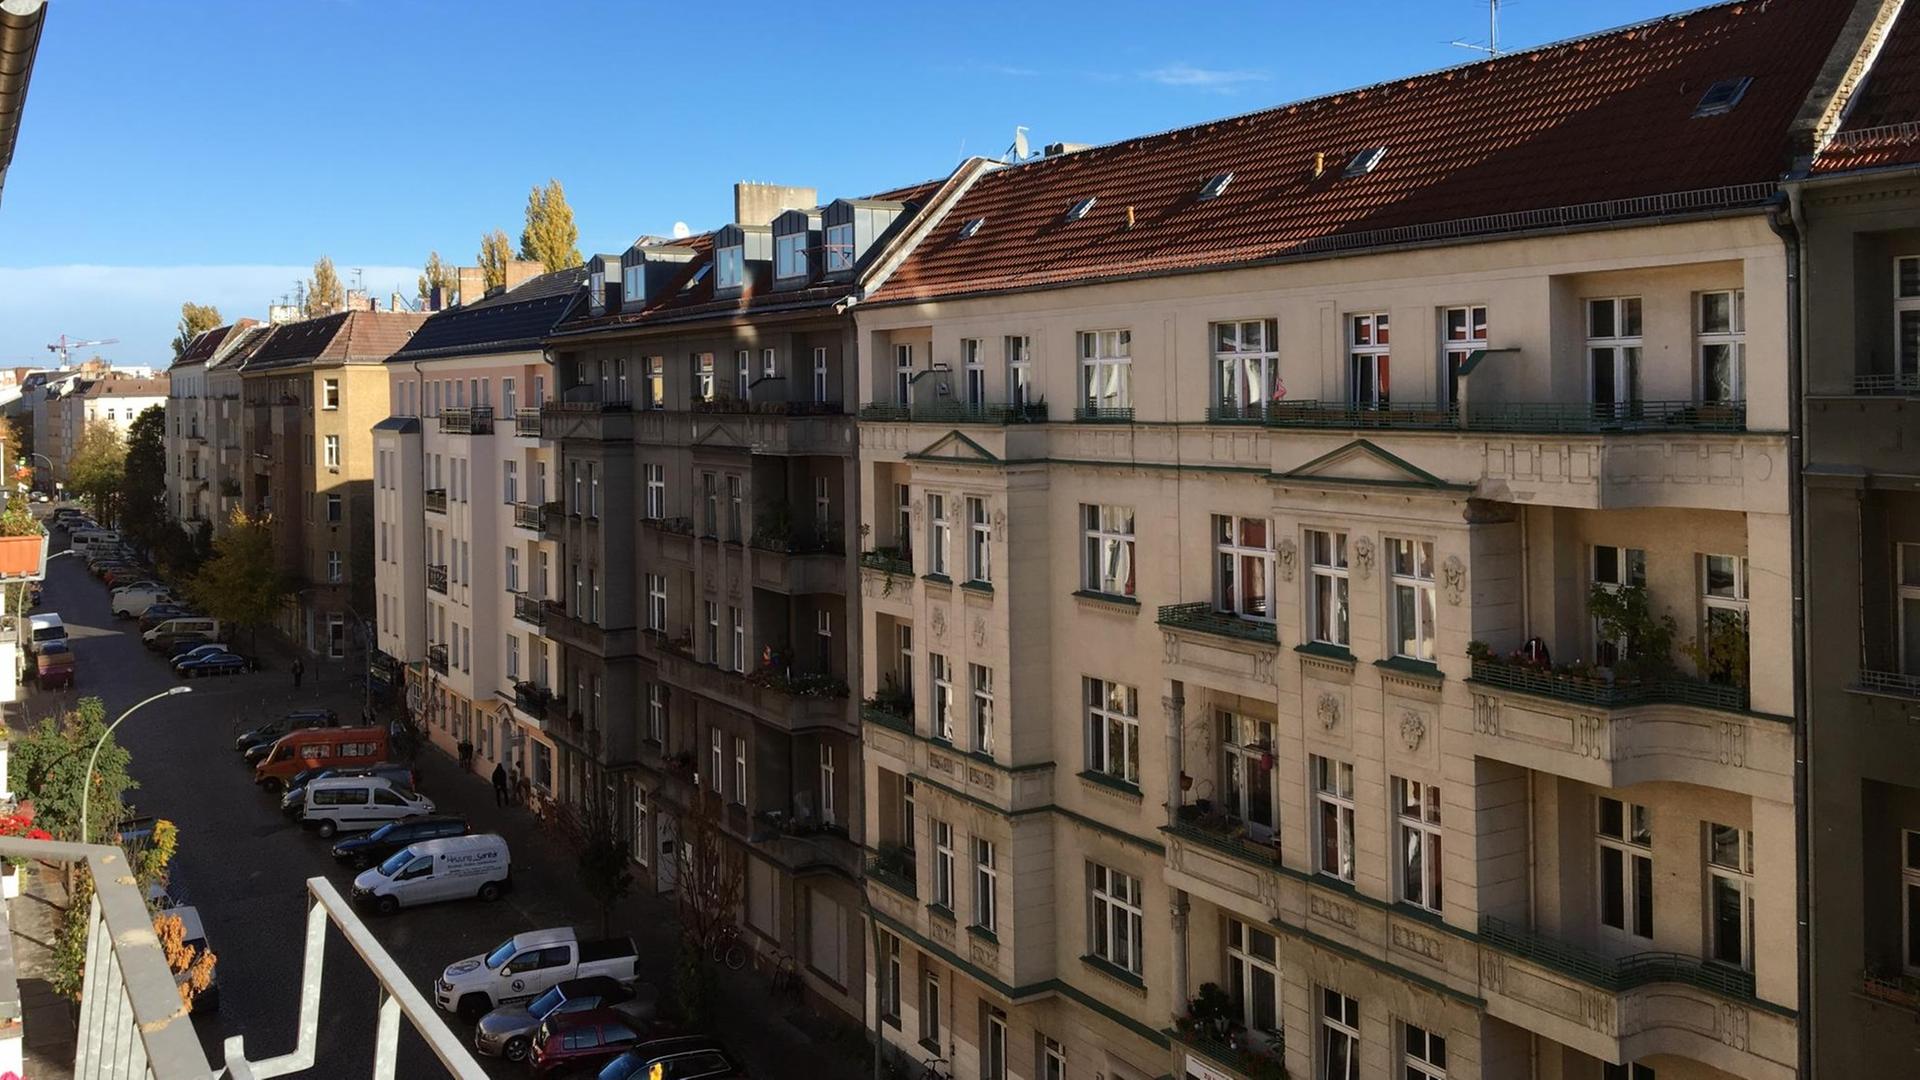 Blick aus einem Fenster auf eine Straße im Berliner Viertel Friedrichshain